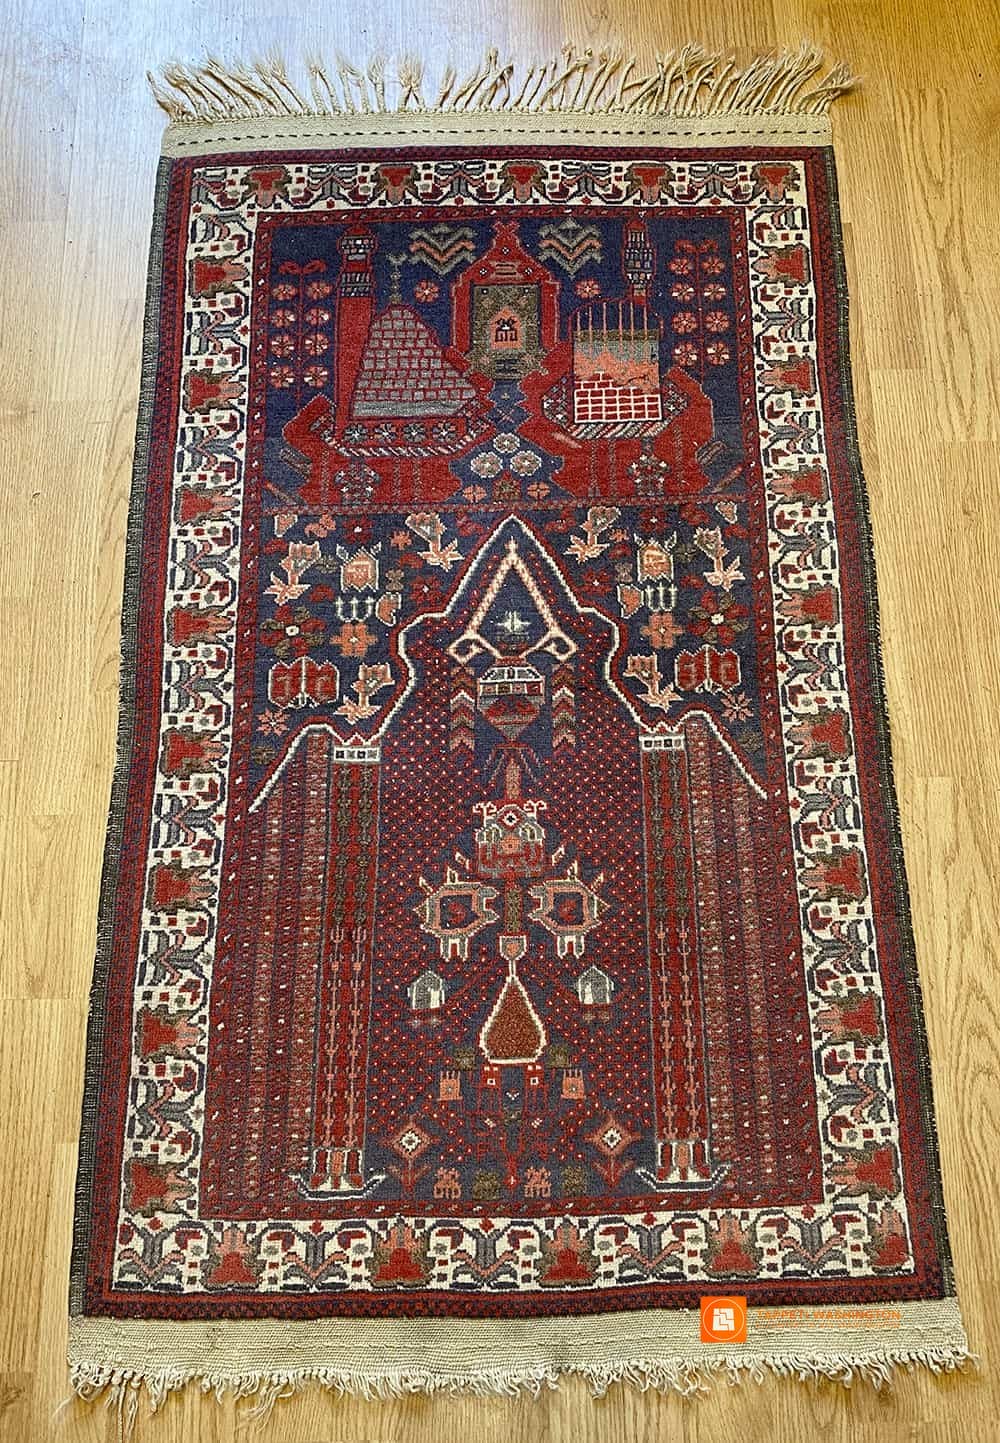 Viaggio tra i tappeti persiani originali - Artorient Milano